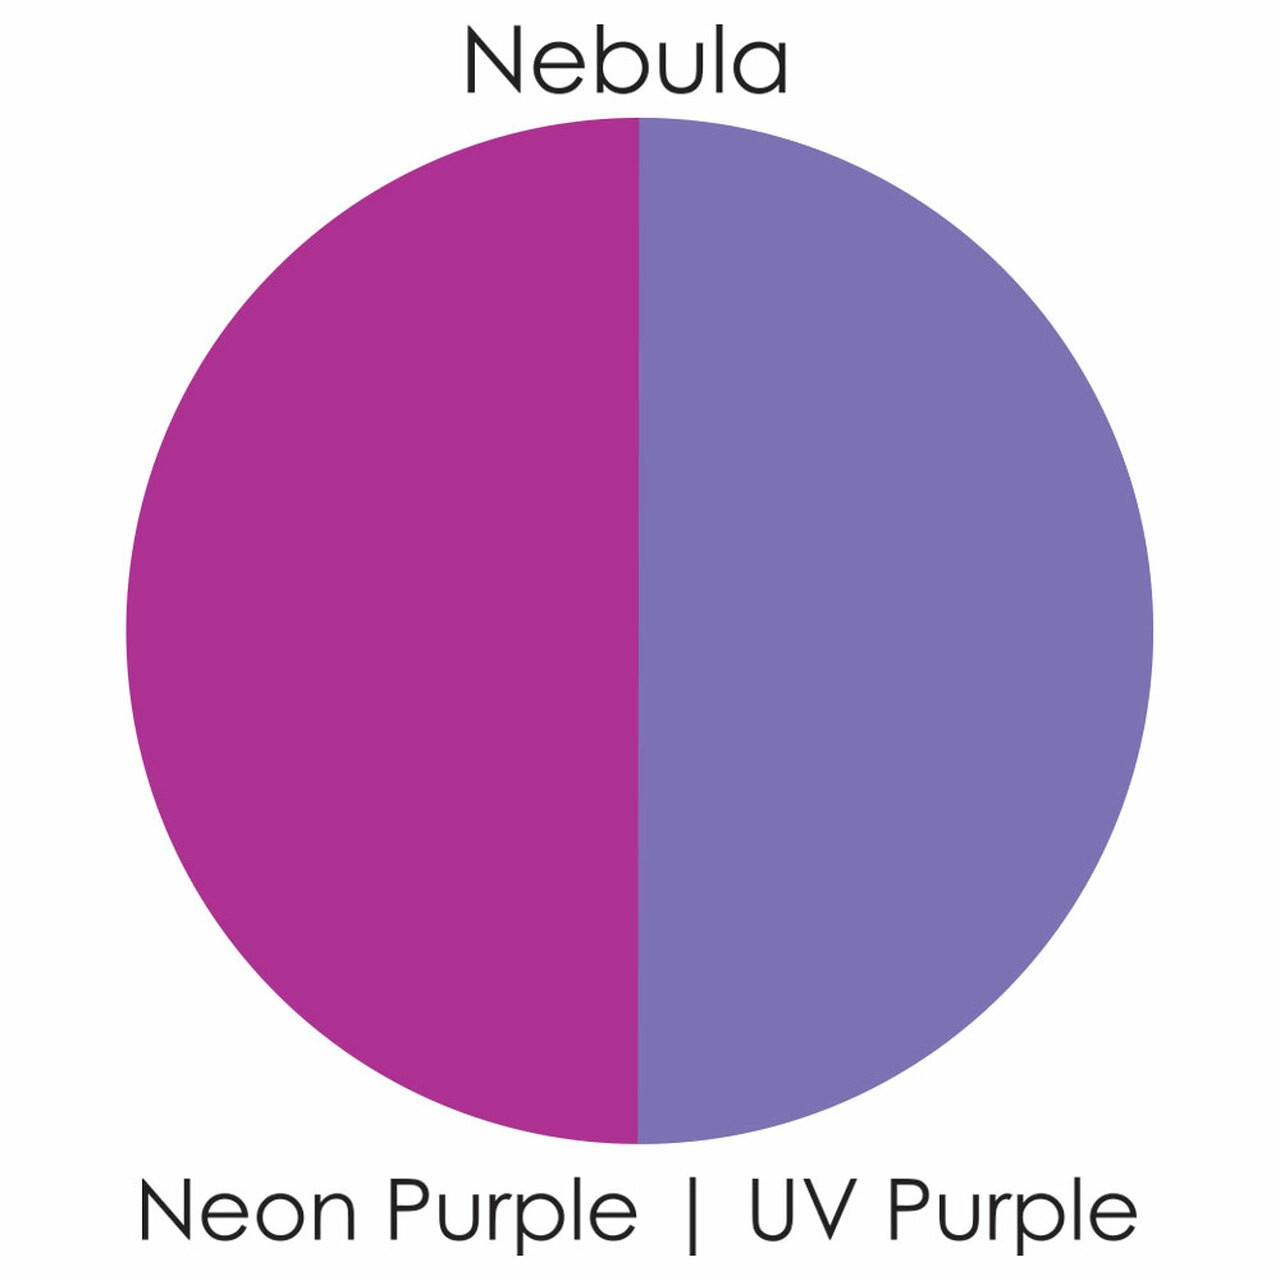 Nebula/Neon Purple - Paradise